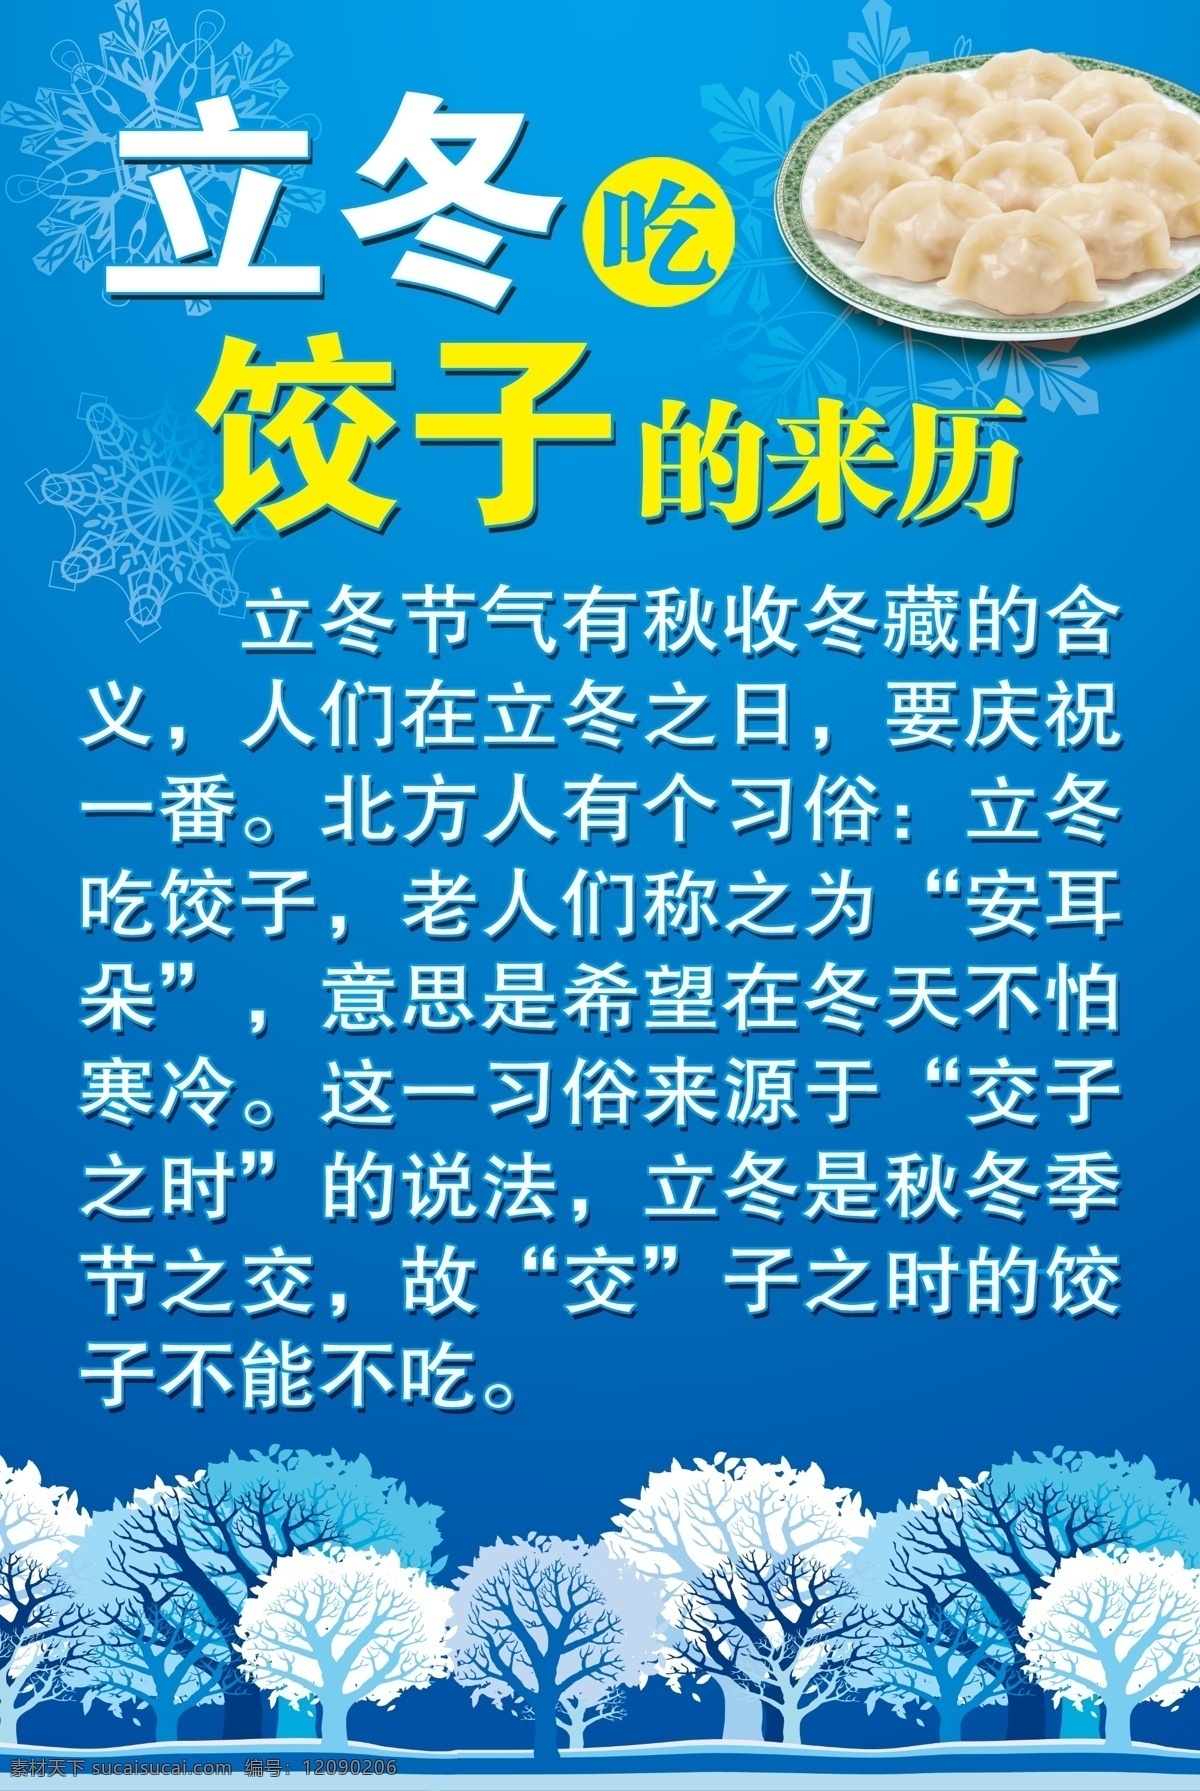 立冬吃饺子 饺子 雪花 树 雪天 广告设计模板 源文件